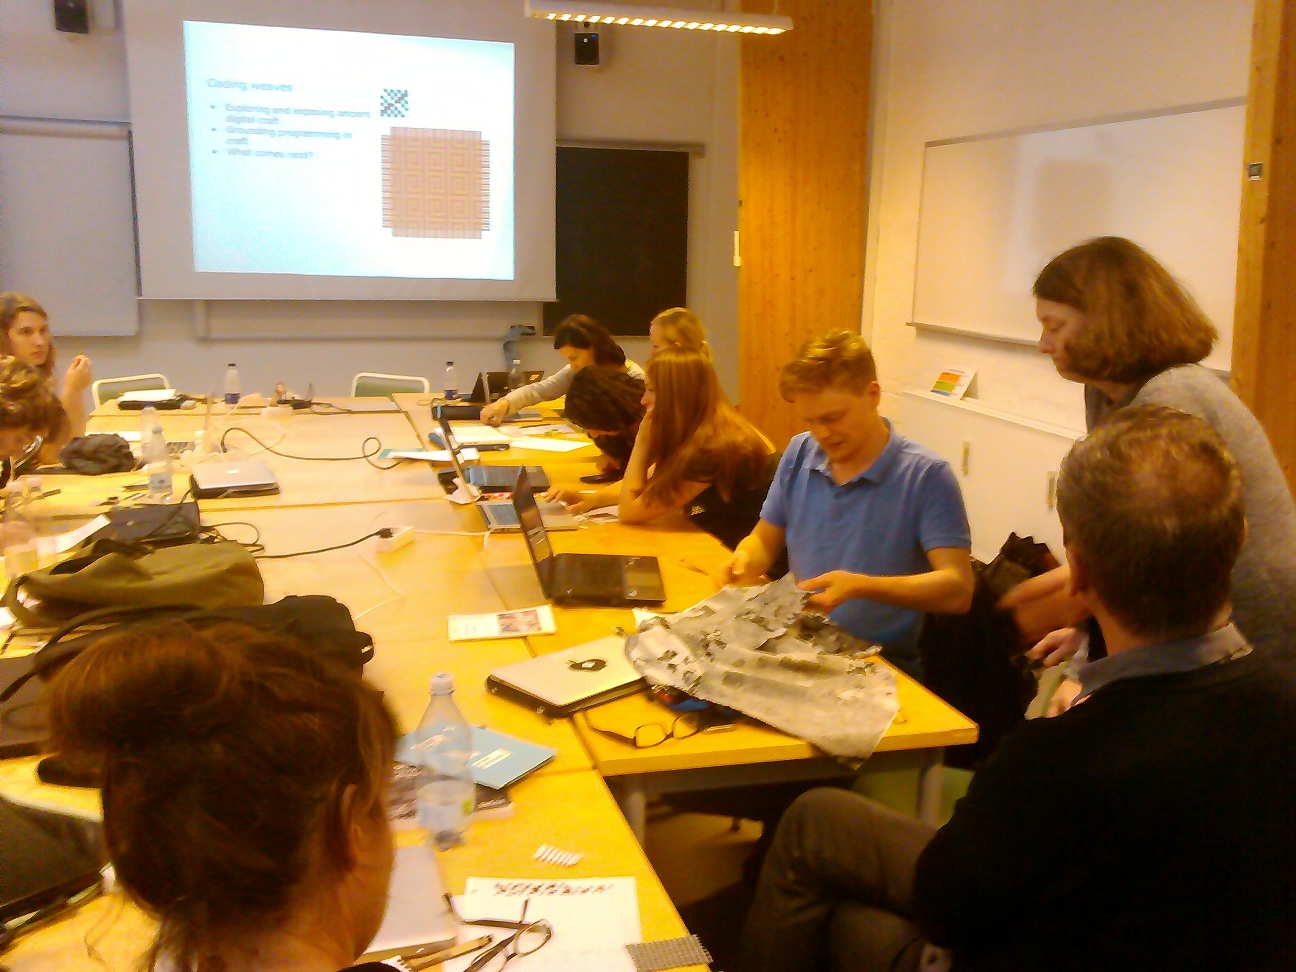 Workshop participants working in Aarhus